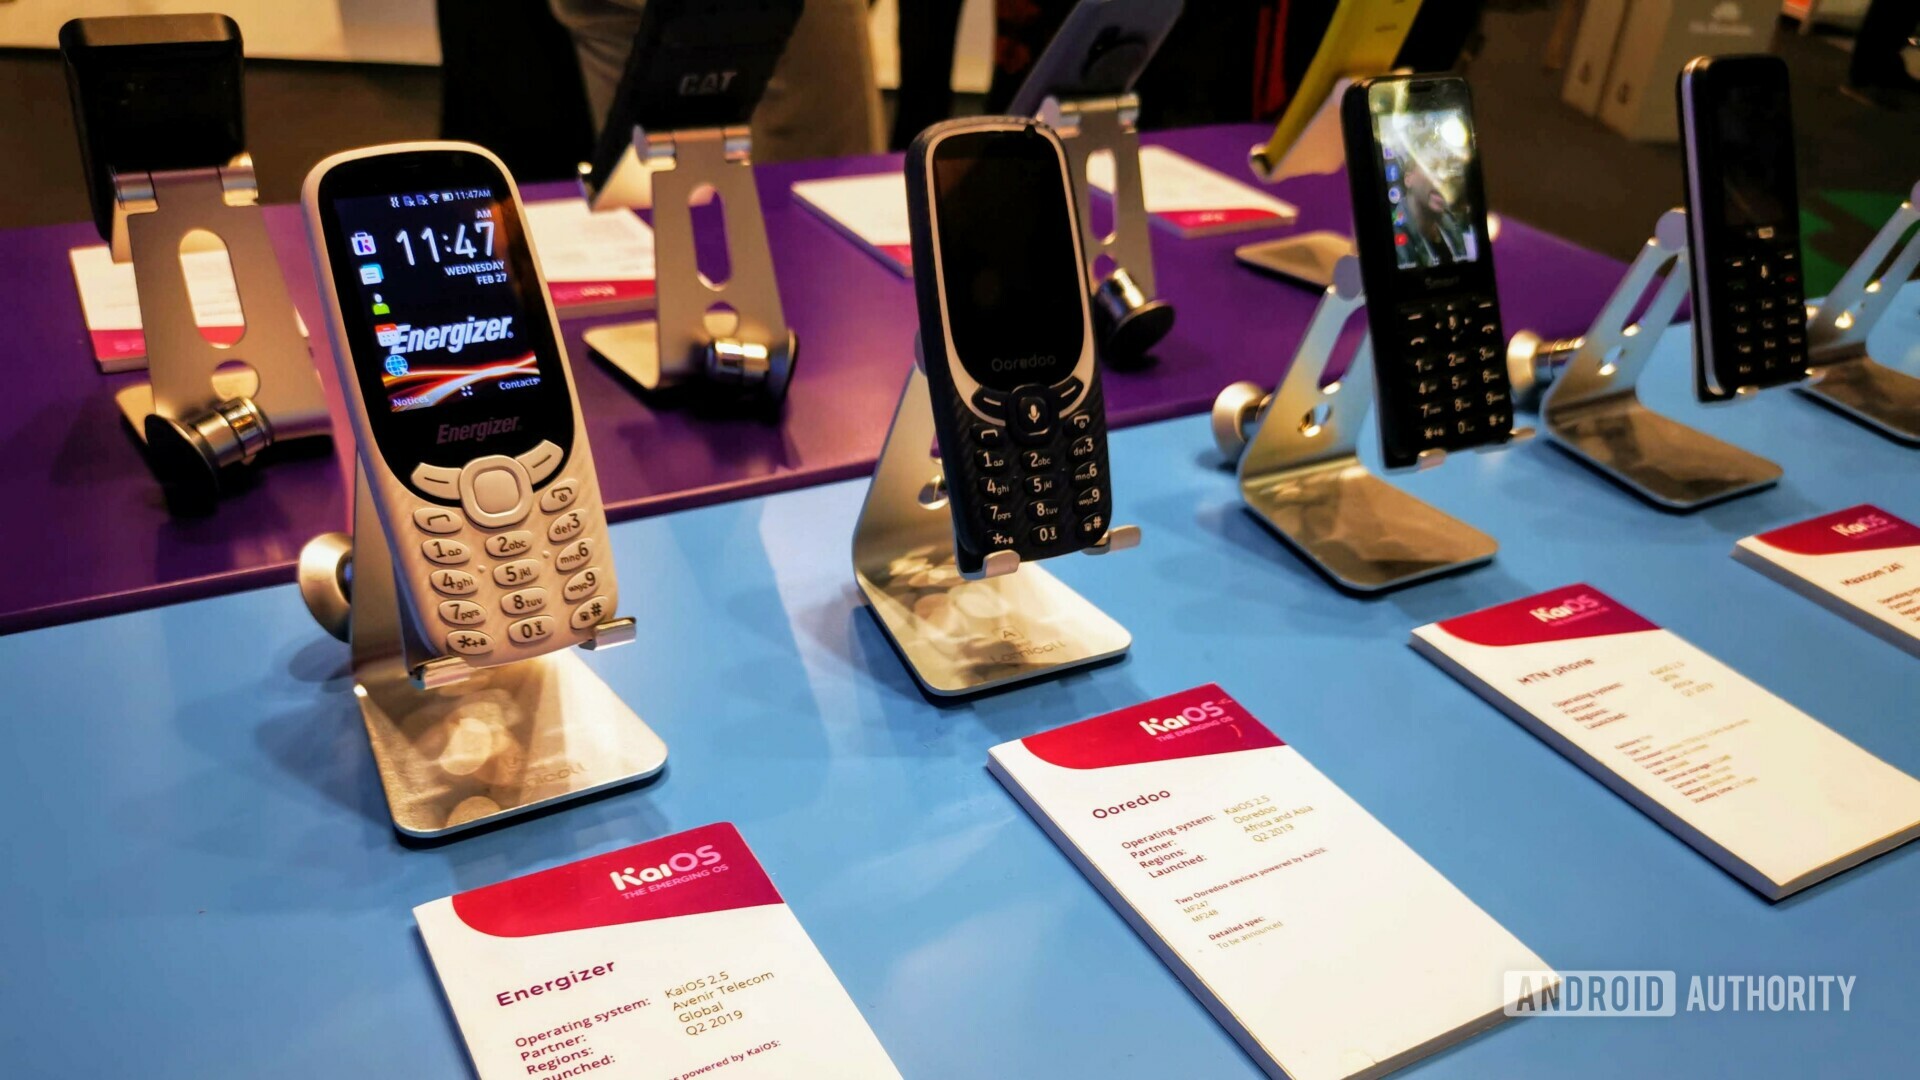 Kaios手机在MWC 2019上。